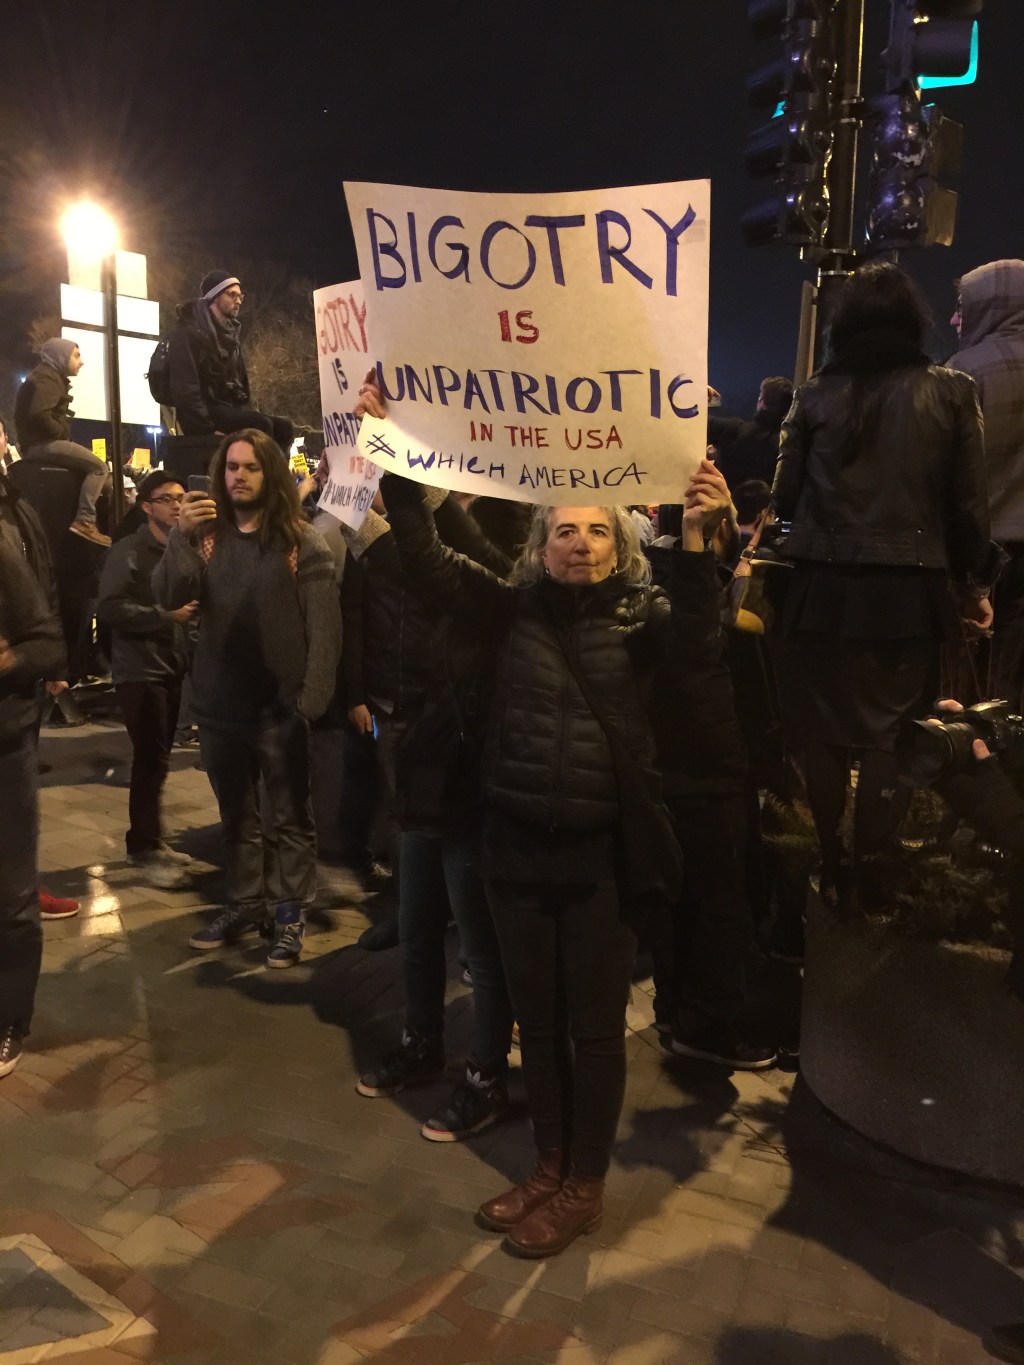 Manifestantes protestan contra Donald Trump afuera del UIC Pavillion en Chicago, el 11 de marzo de 2016, donde un evento del magnate y precandidato republicano fue cancelado por razones de seguridad.